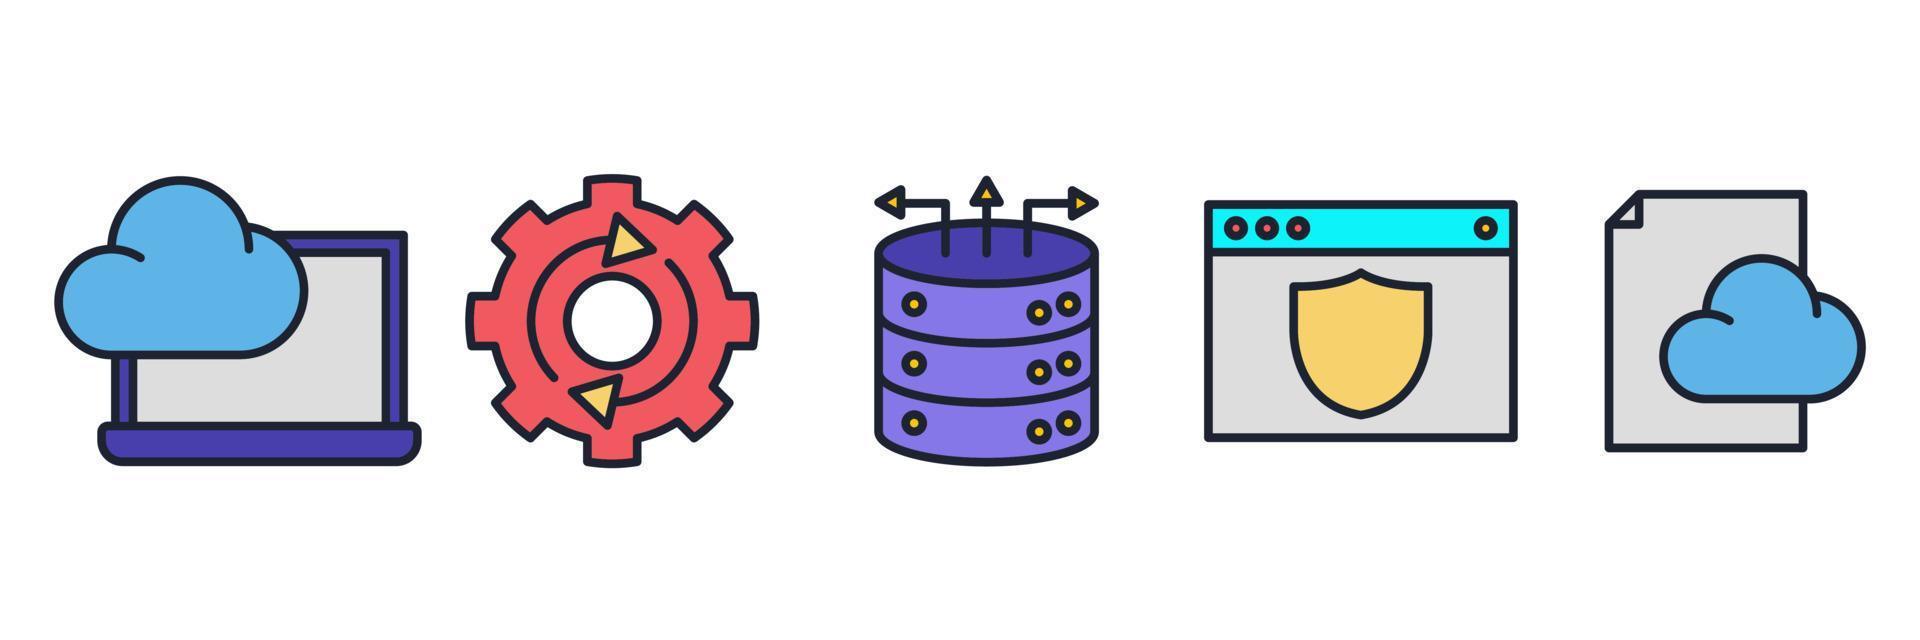 modelo de símbolo de ícone de conjunto de hospedagem para ilustração em vetor de logotipo de coleção de design gráfico e web